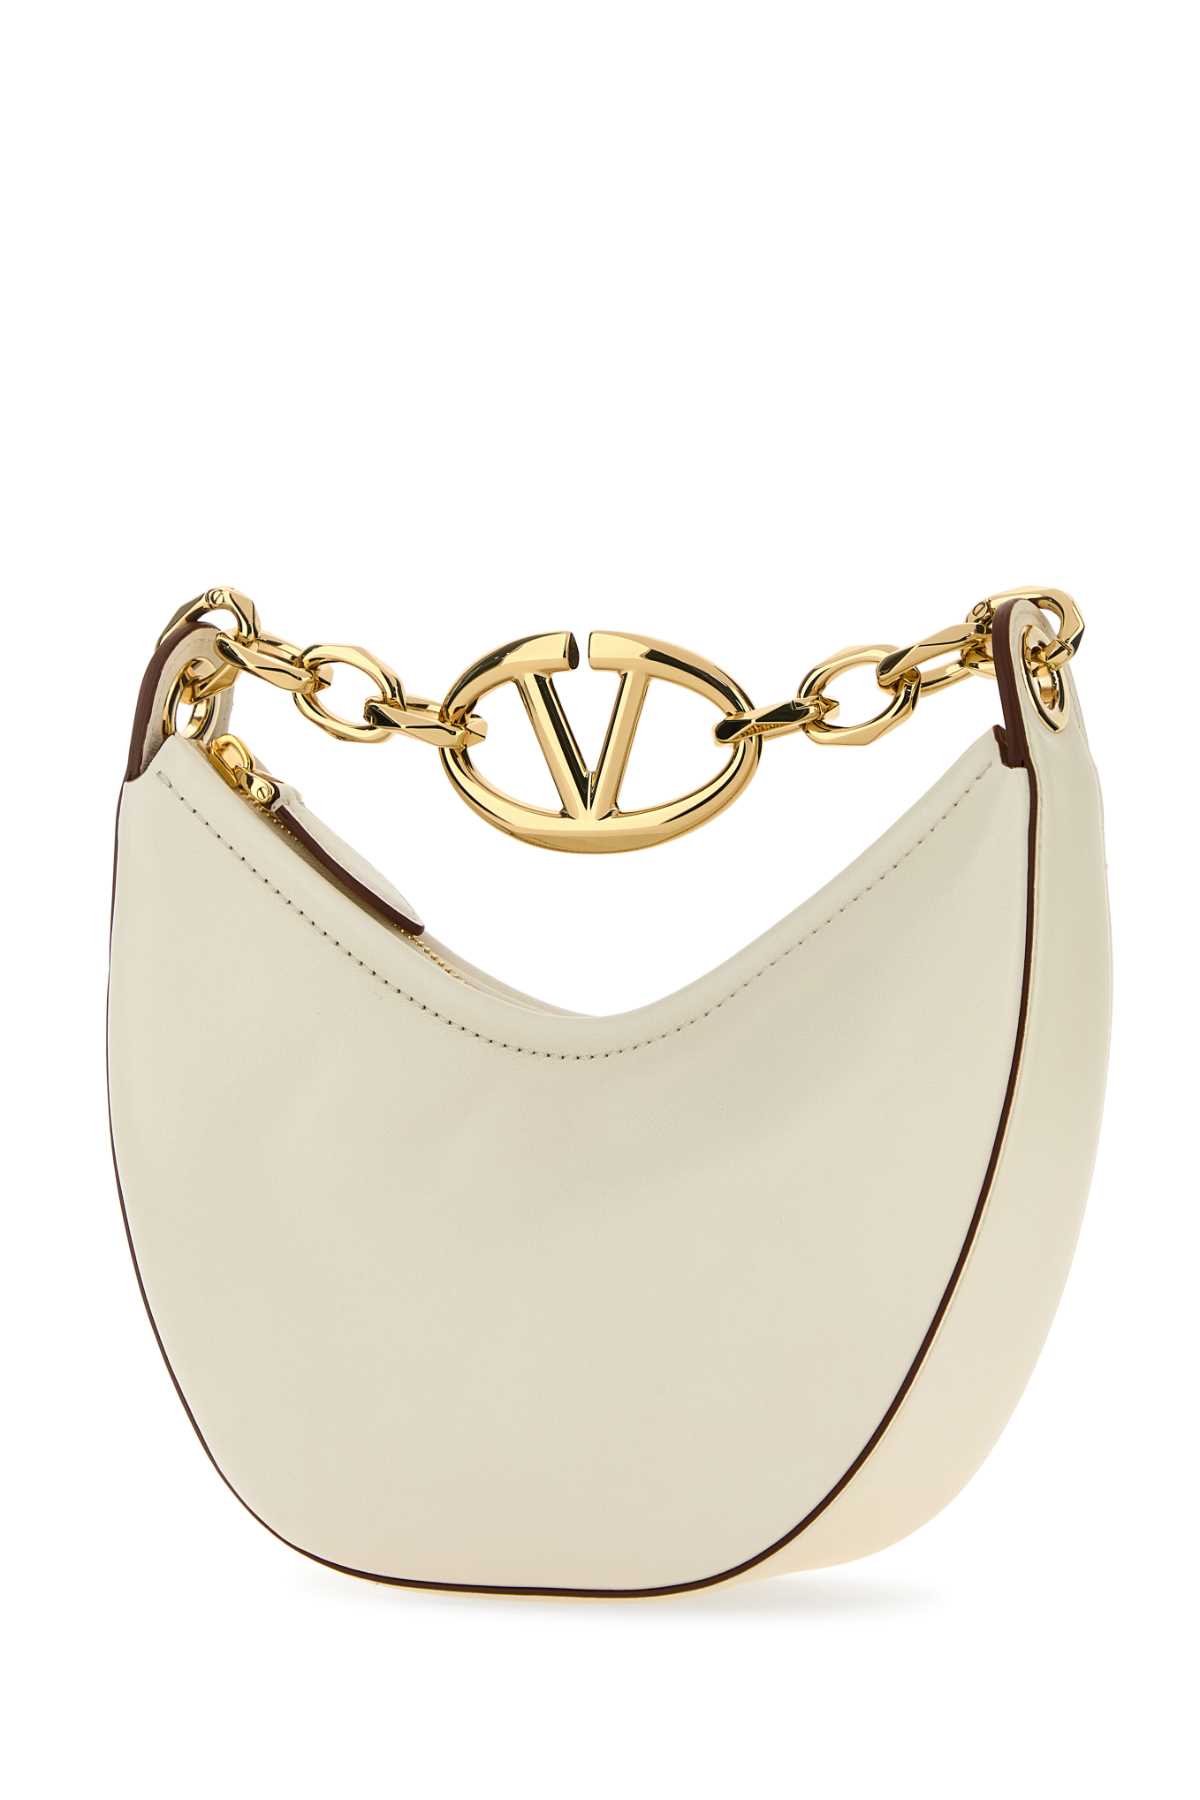 Shop Valentino Ivory Leather Vlogo Handbag